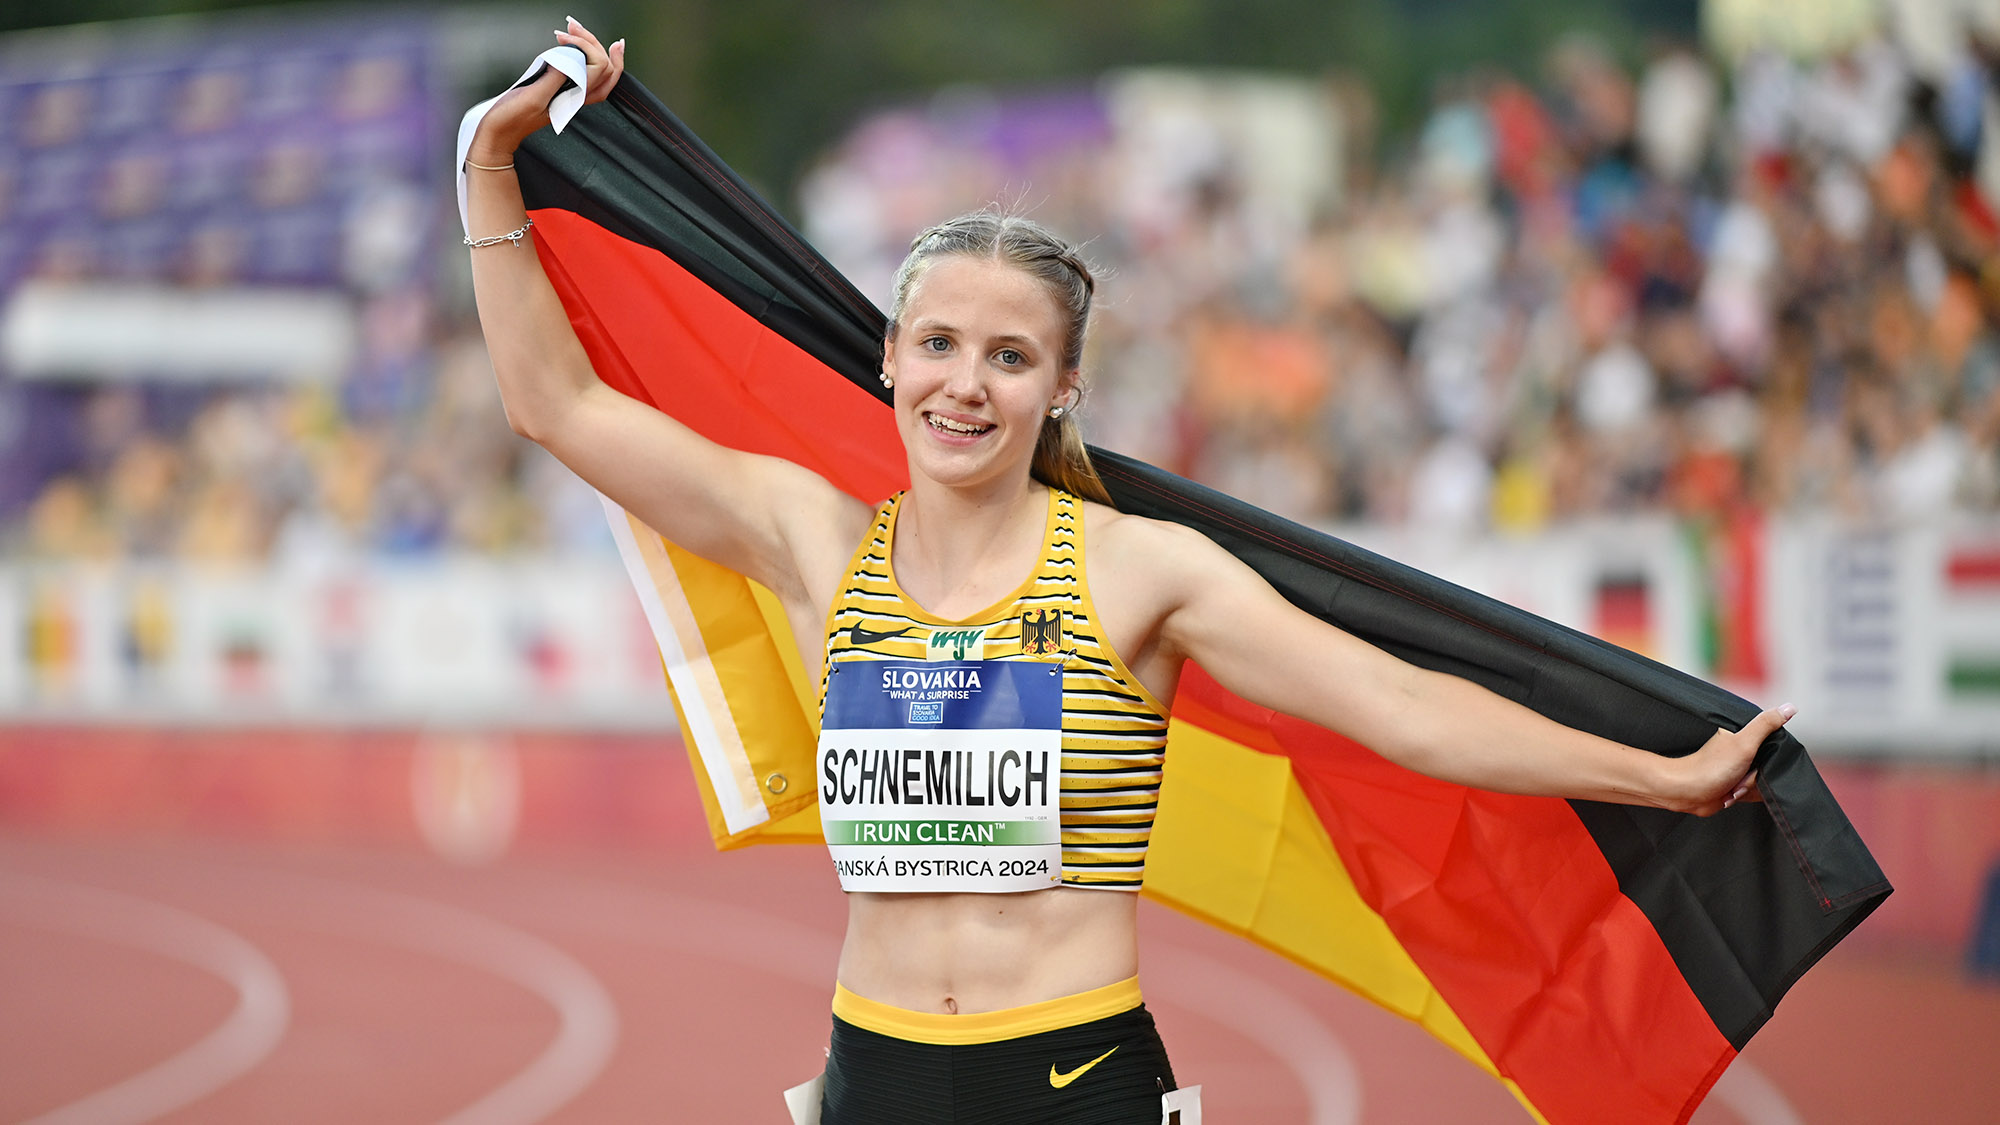 U18-EM Tag 1 und 2 | Maria Schnemilich gelingt Punktlandung: Bronze!